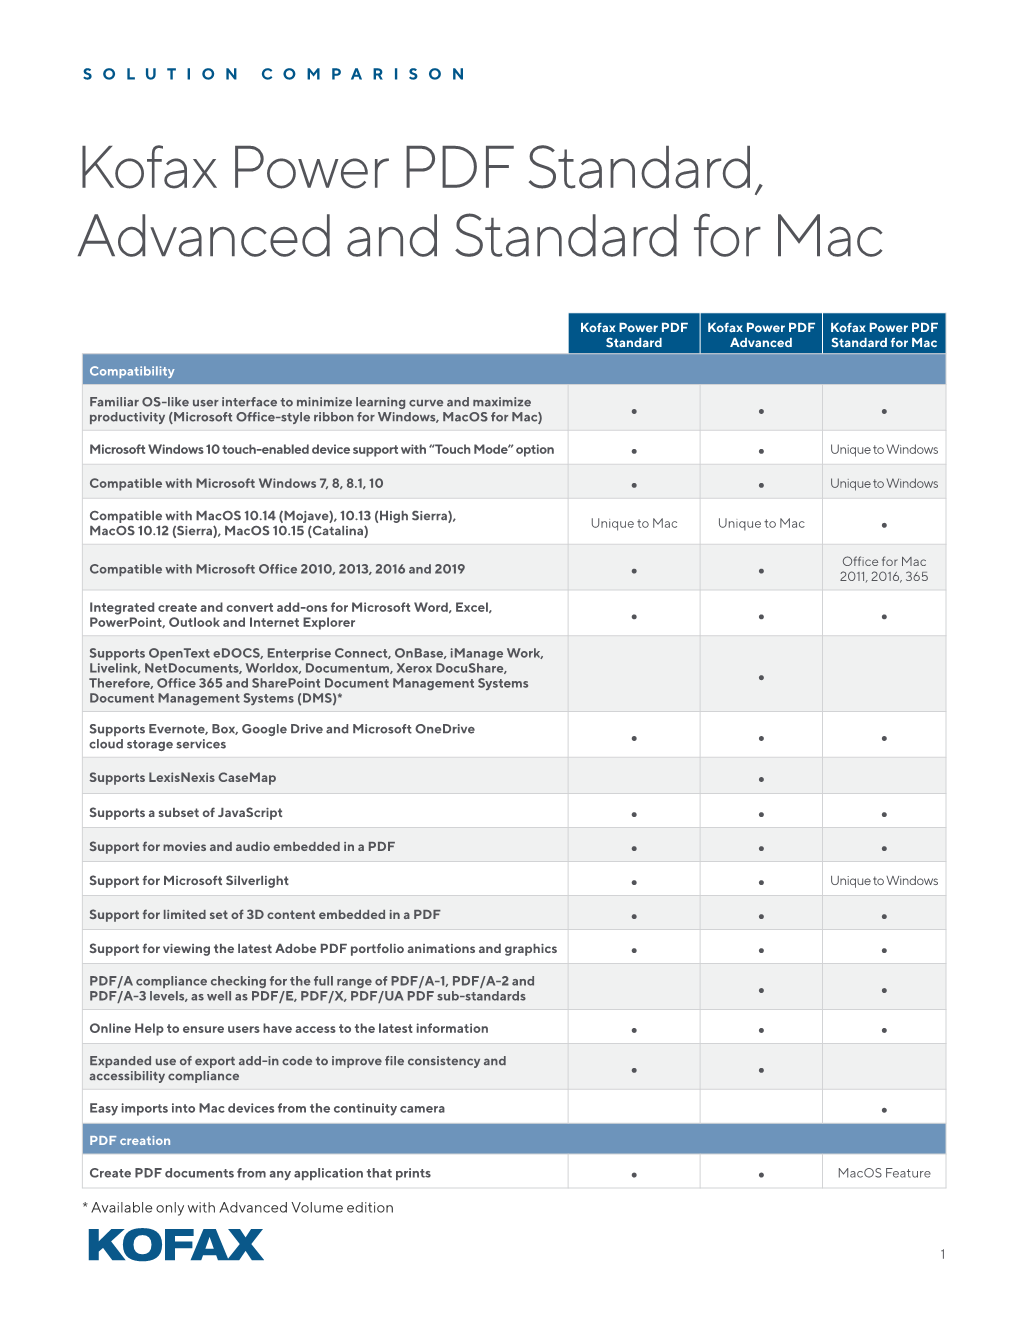 Kofax Power PDF Standard, Advanced and Standard for Mac